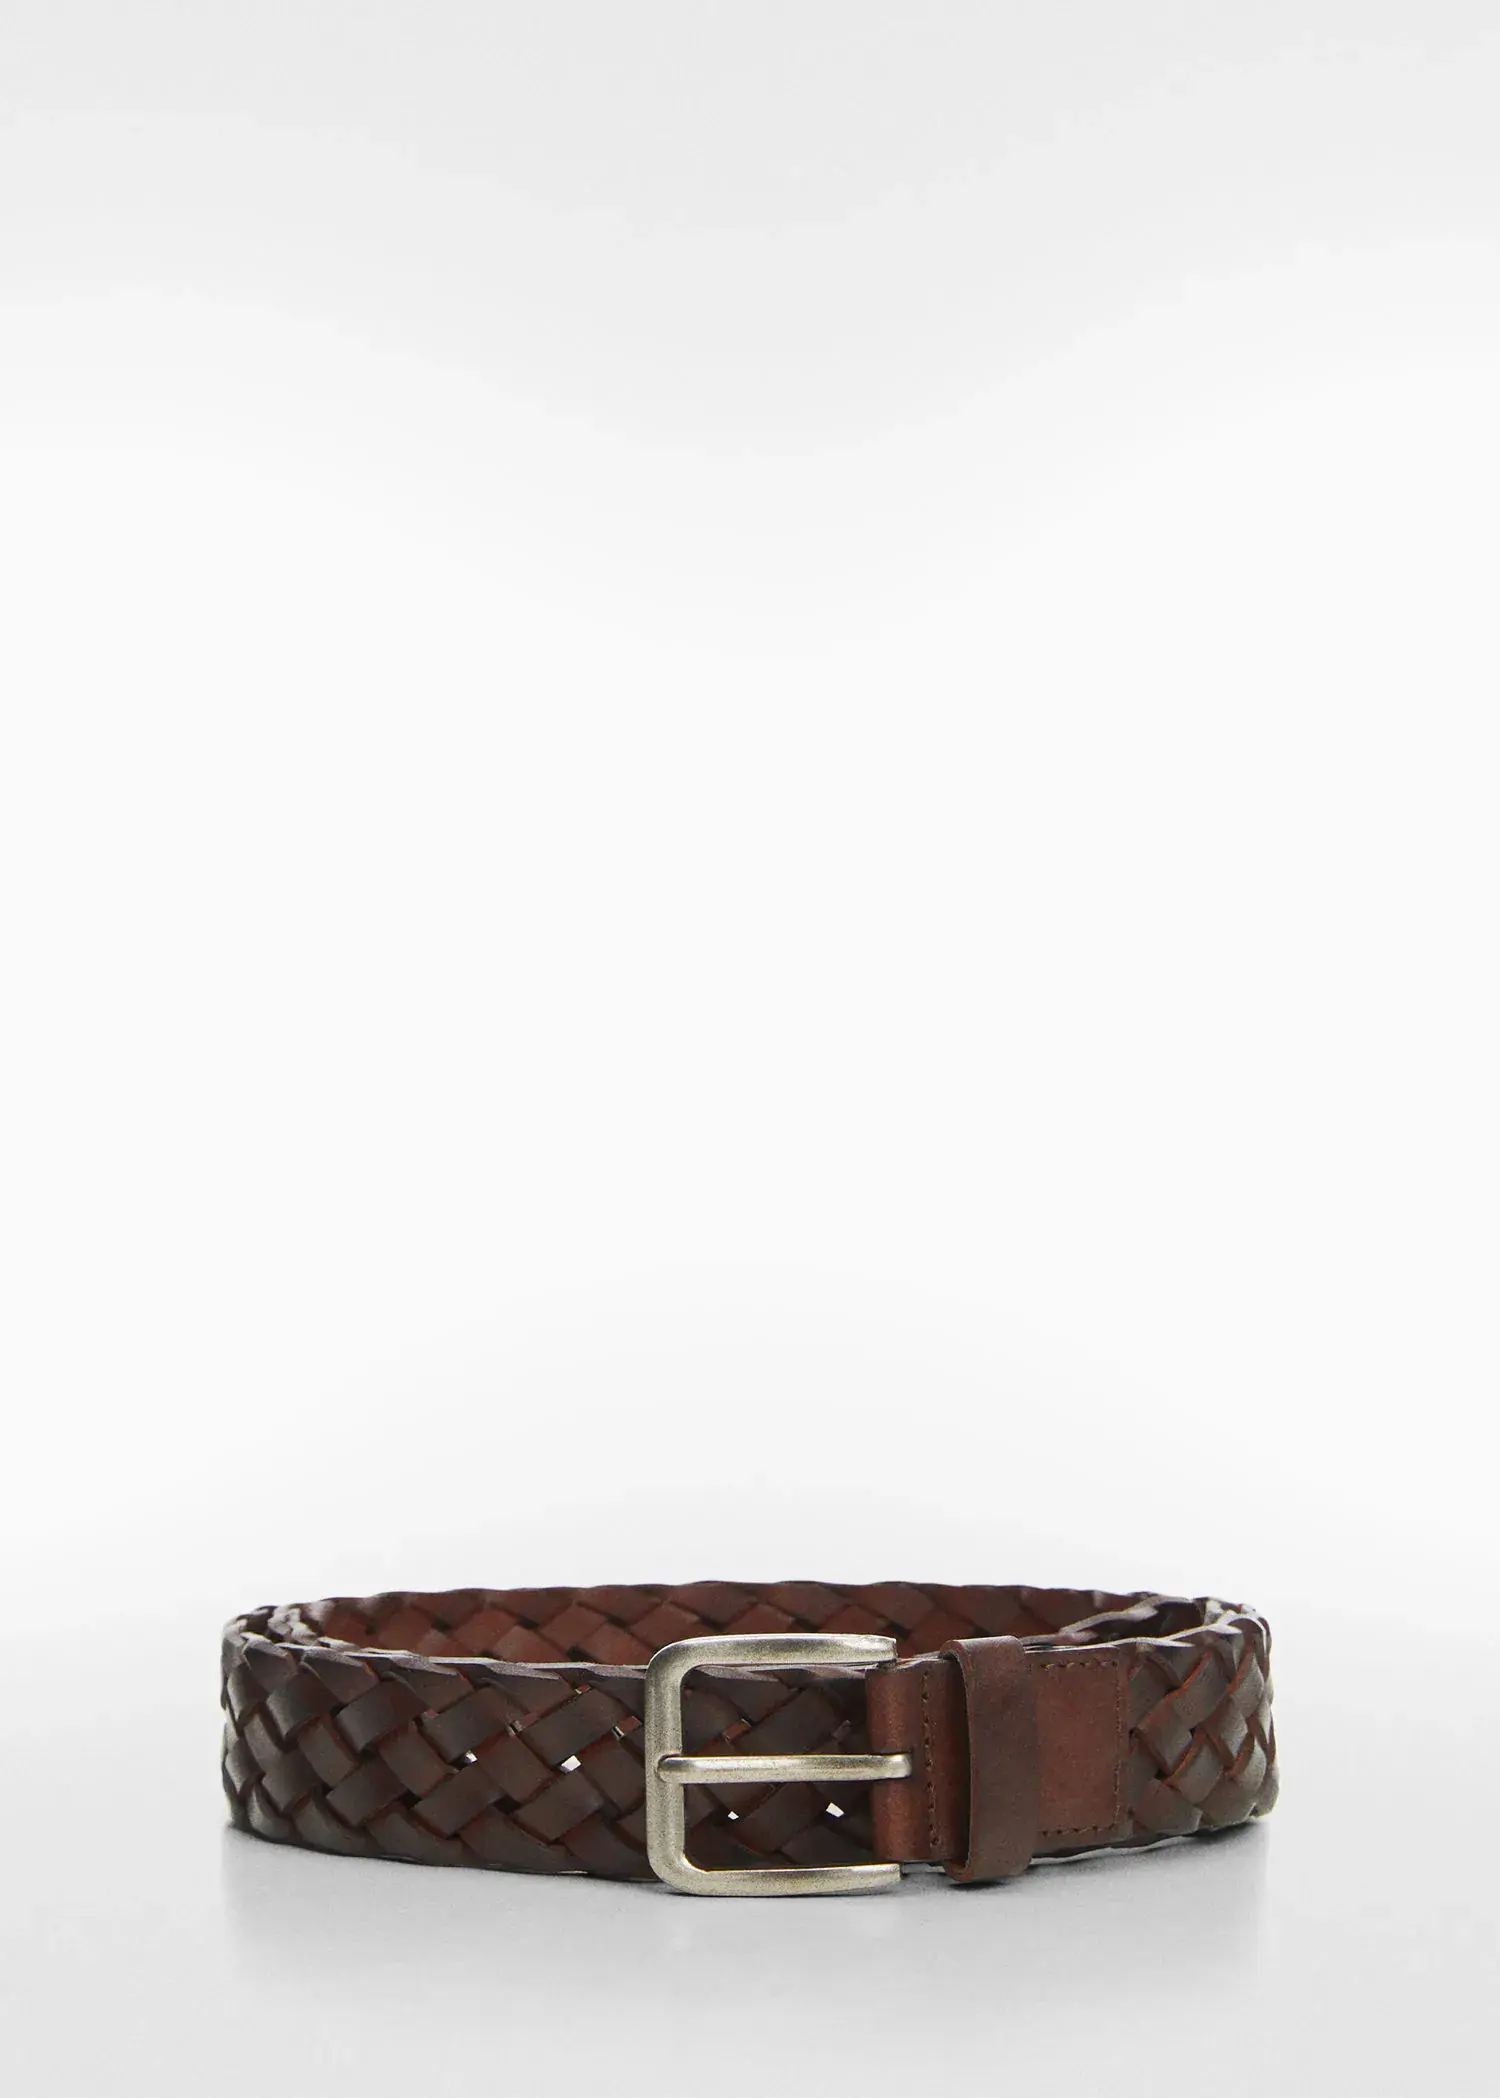 Mango Braided leather belt. 2